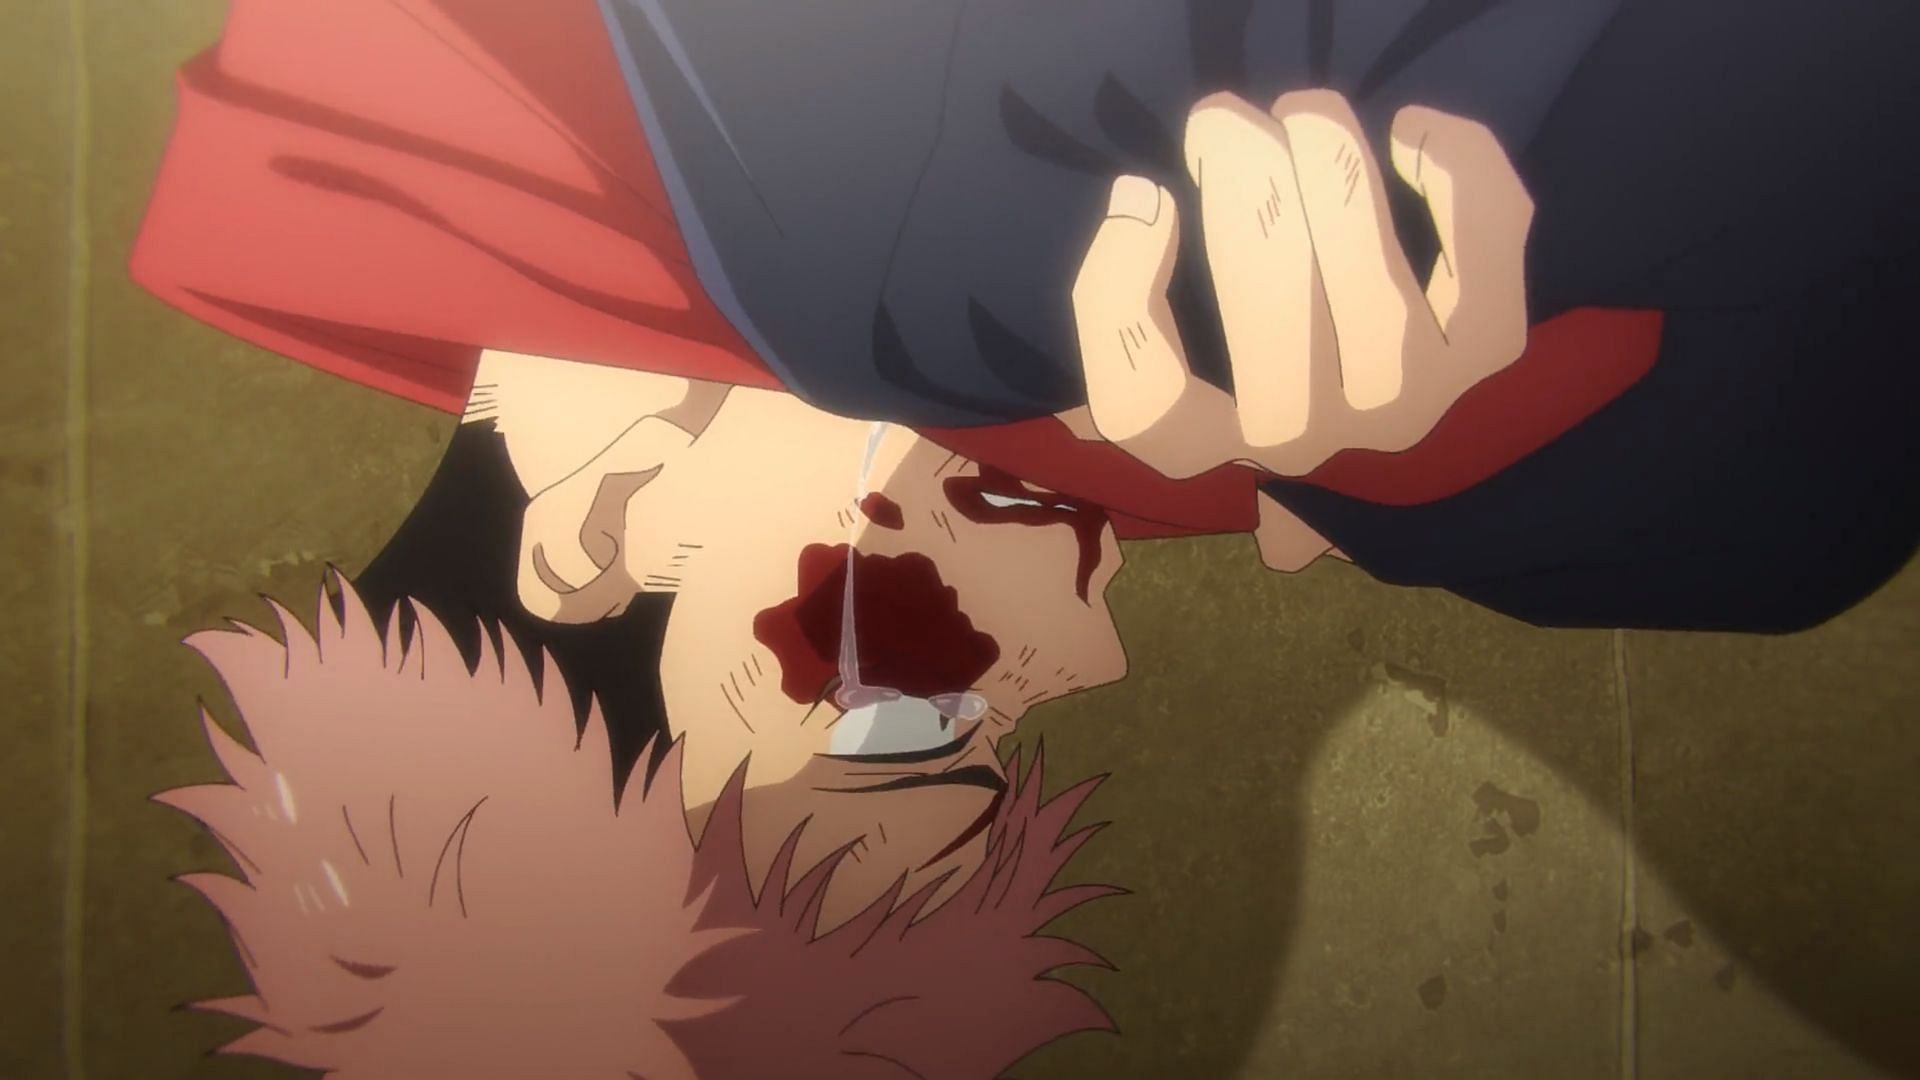 Yuji after being emotionally shattered in Jujutsu Kaisen season 2 episode 20 (Image via MAPPA)